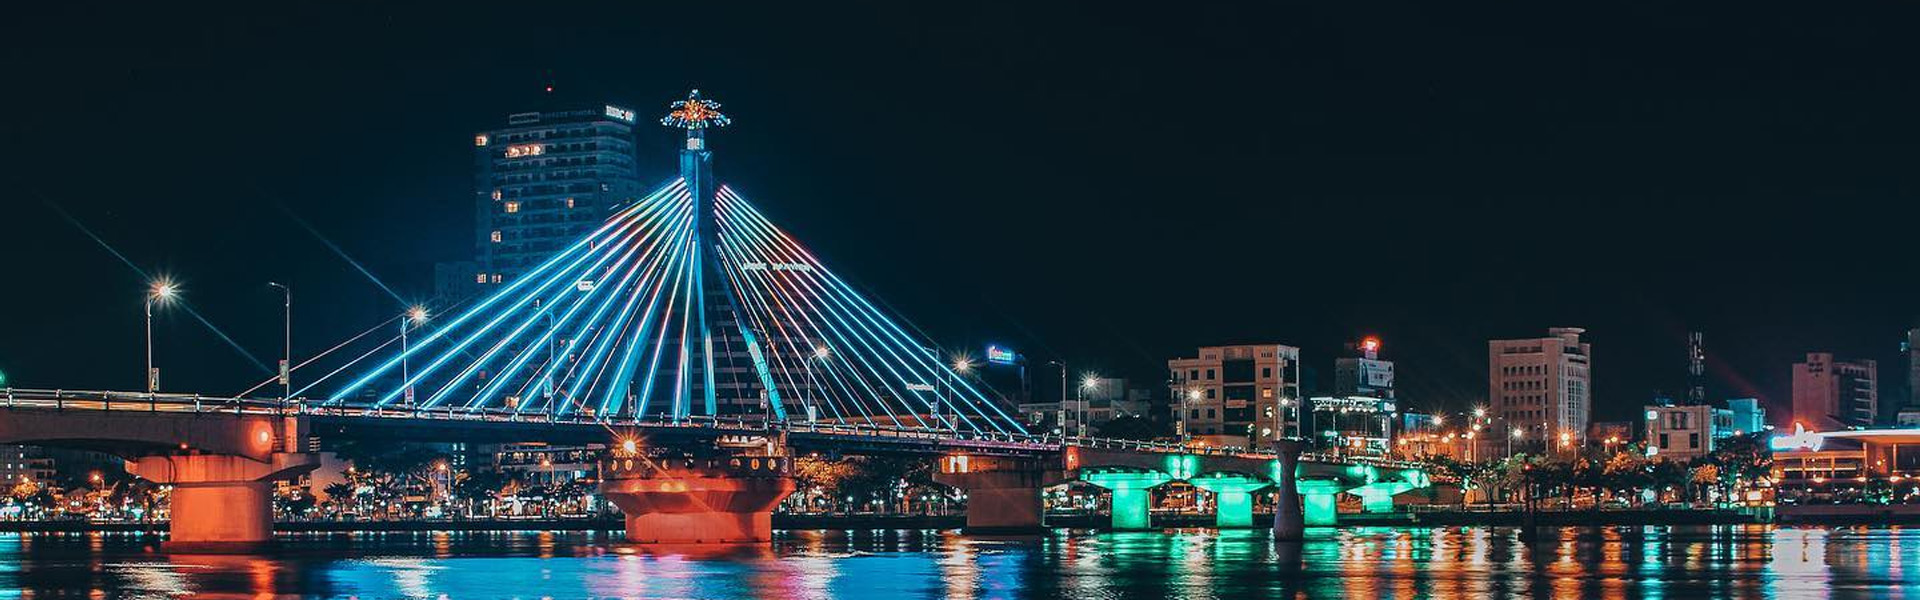 Cầu sông hàn - thành phố Đà Nẵng